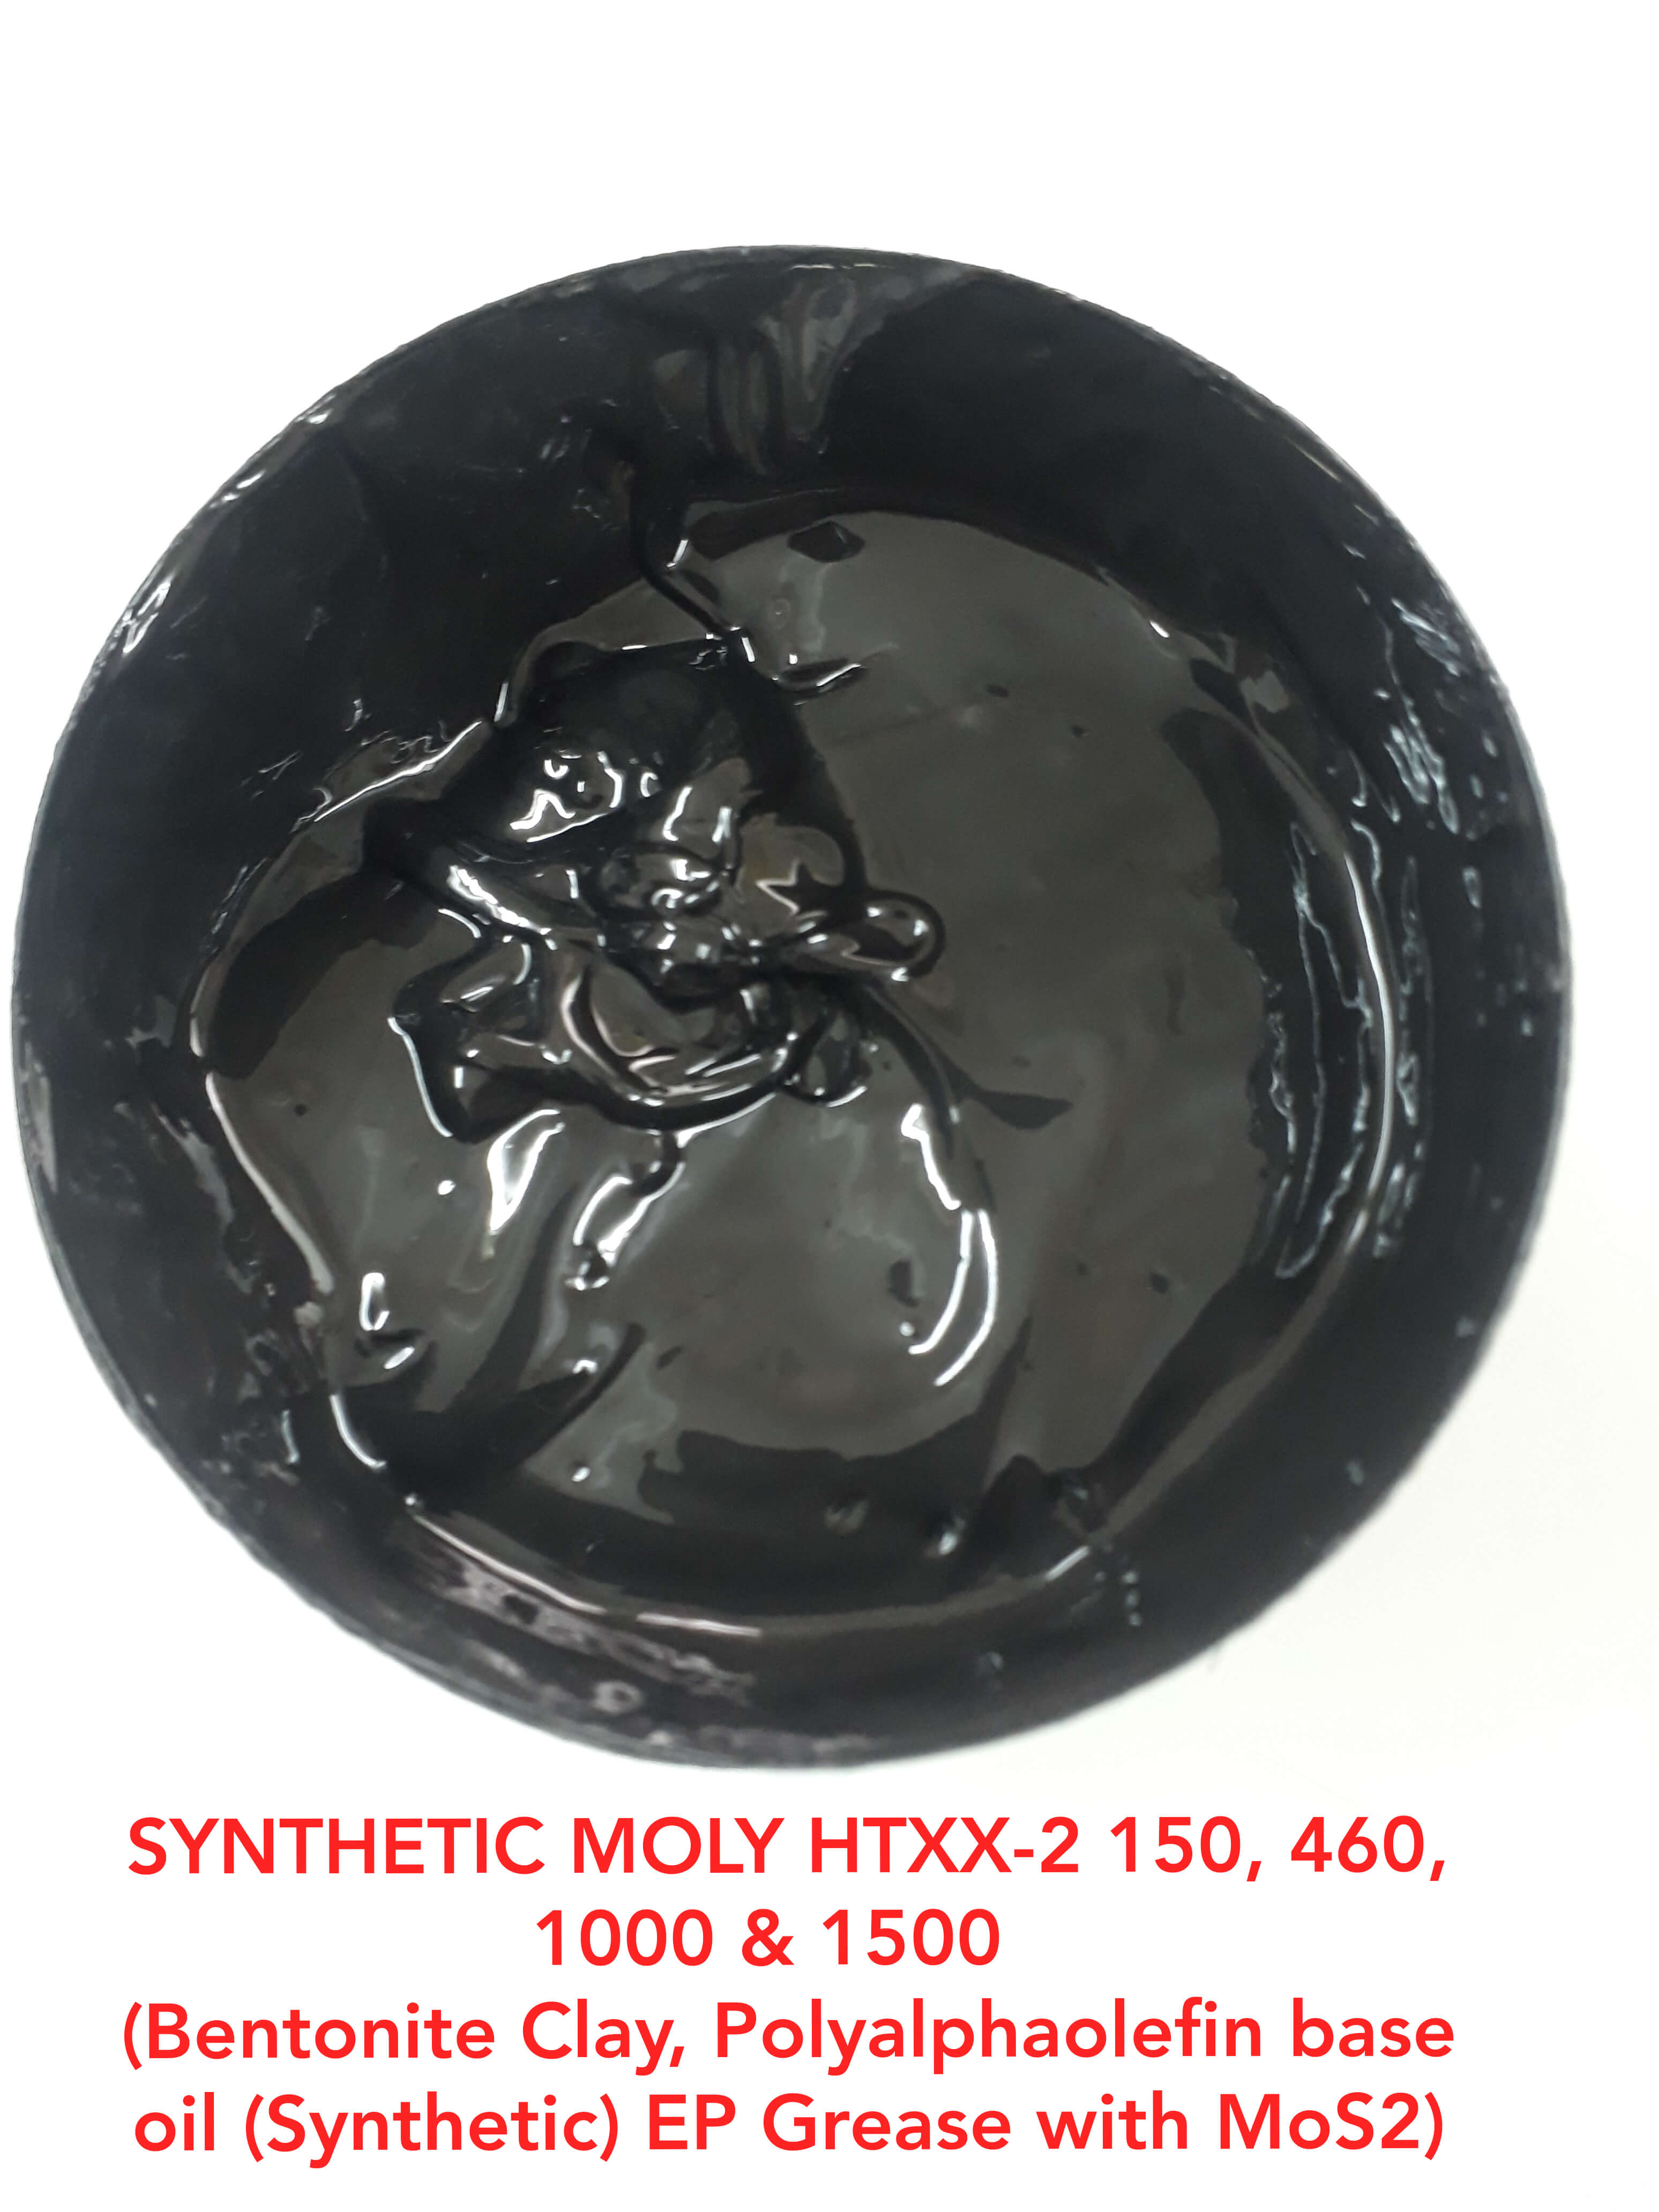 Synthetic Moly HTXX-2 1000, 1500 (Synthetic + Bentonite Clay)